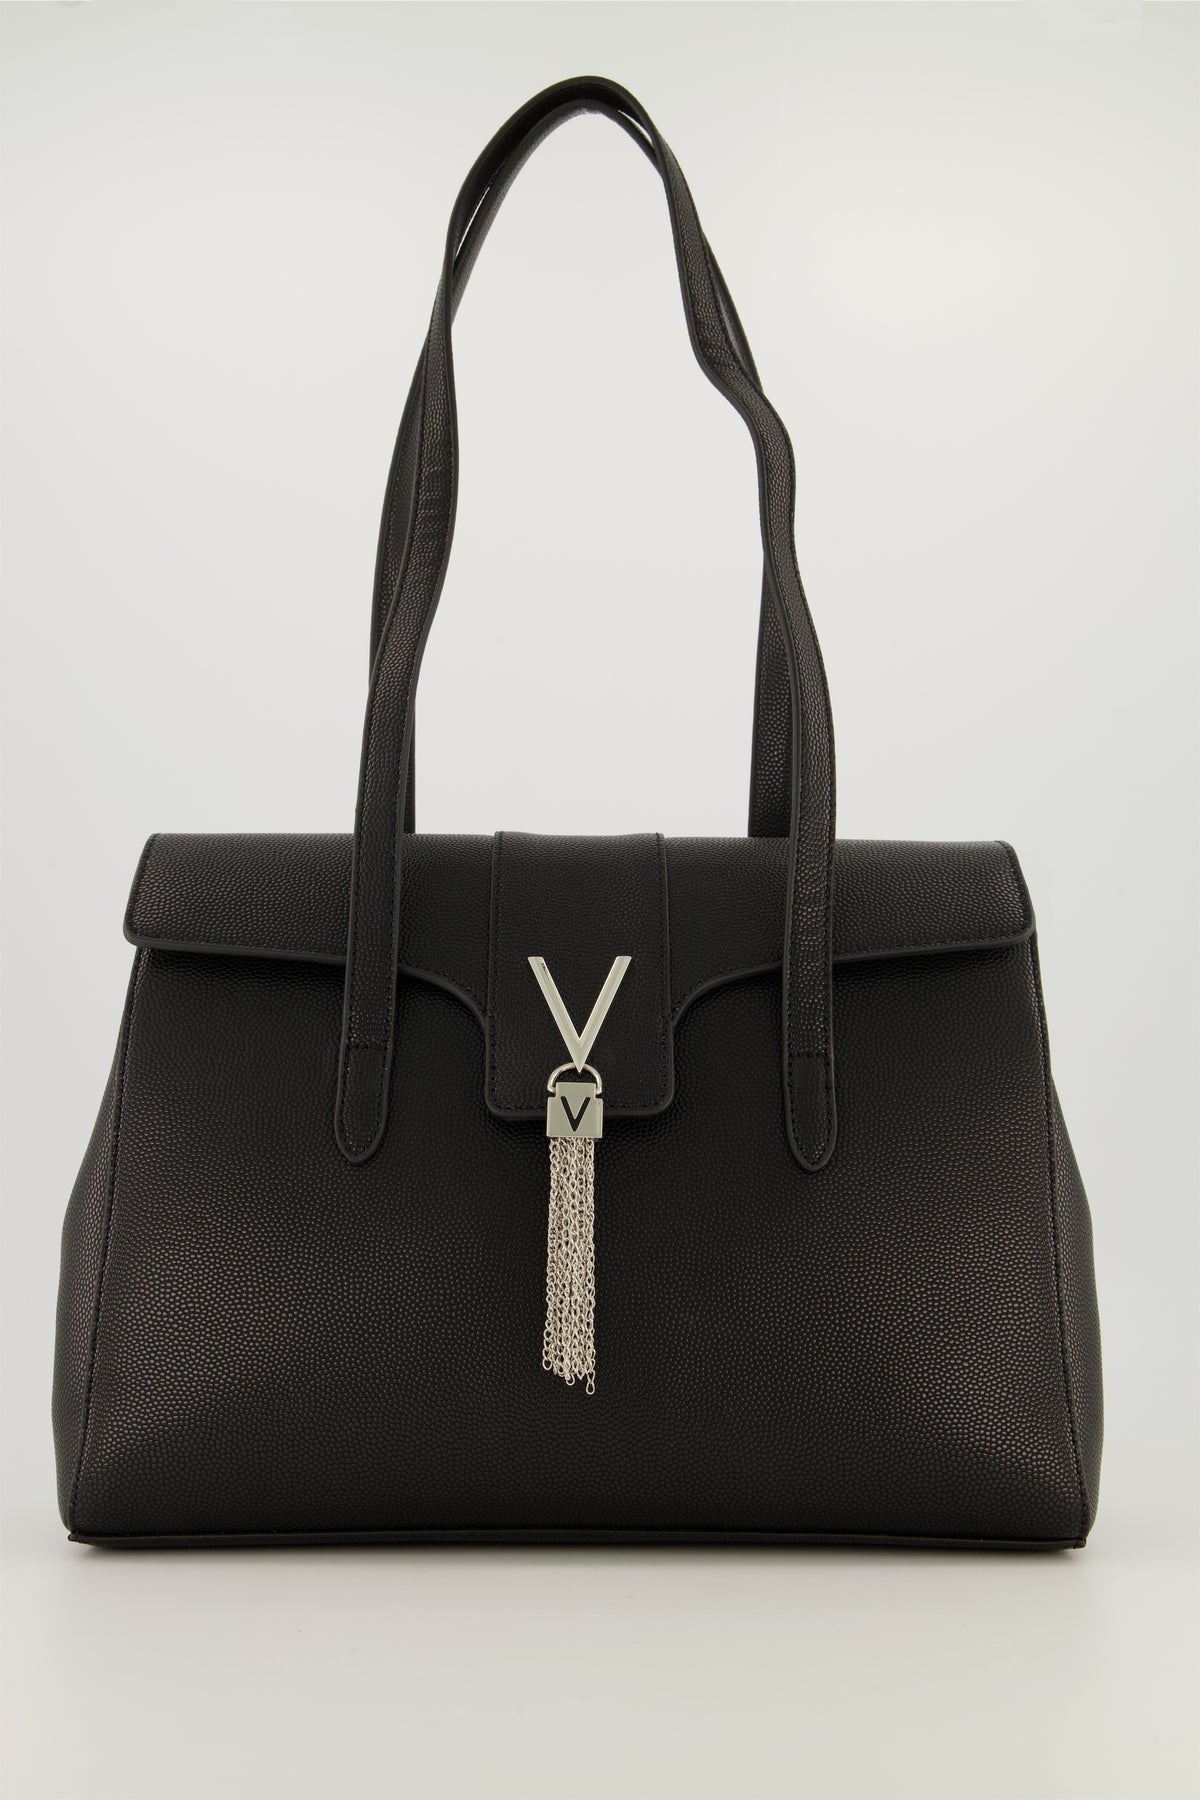 Valentino Bags Grey Divina Pebbled Tote Bag